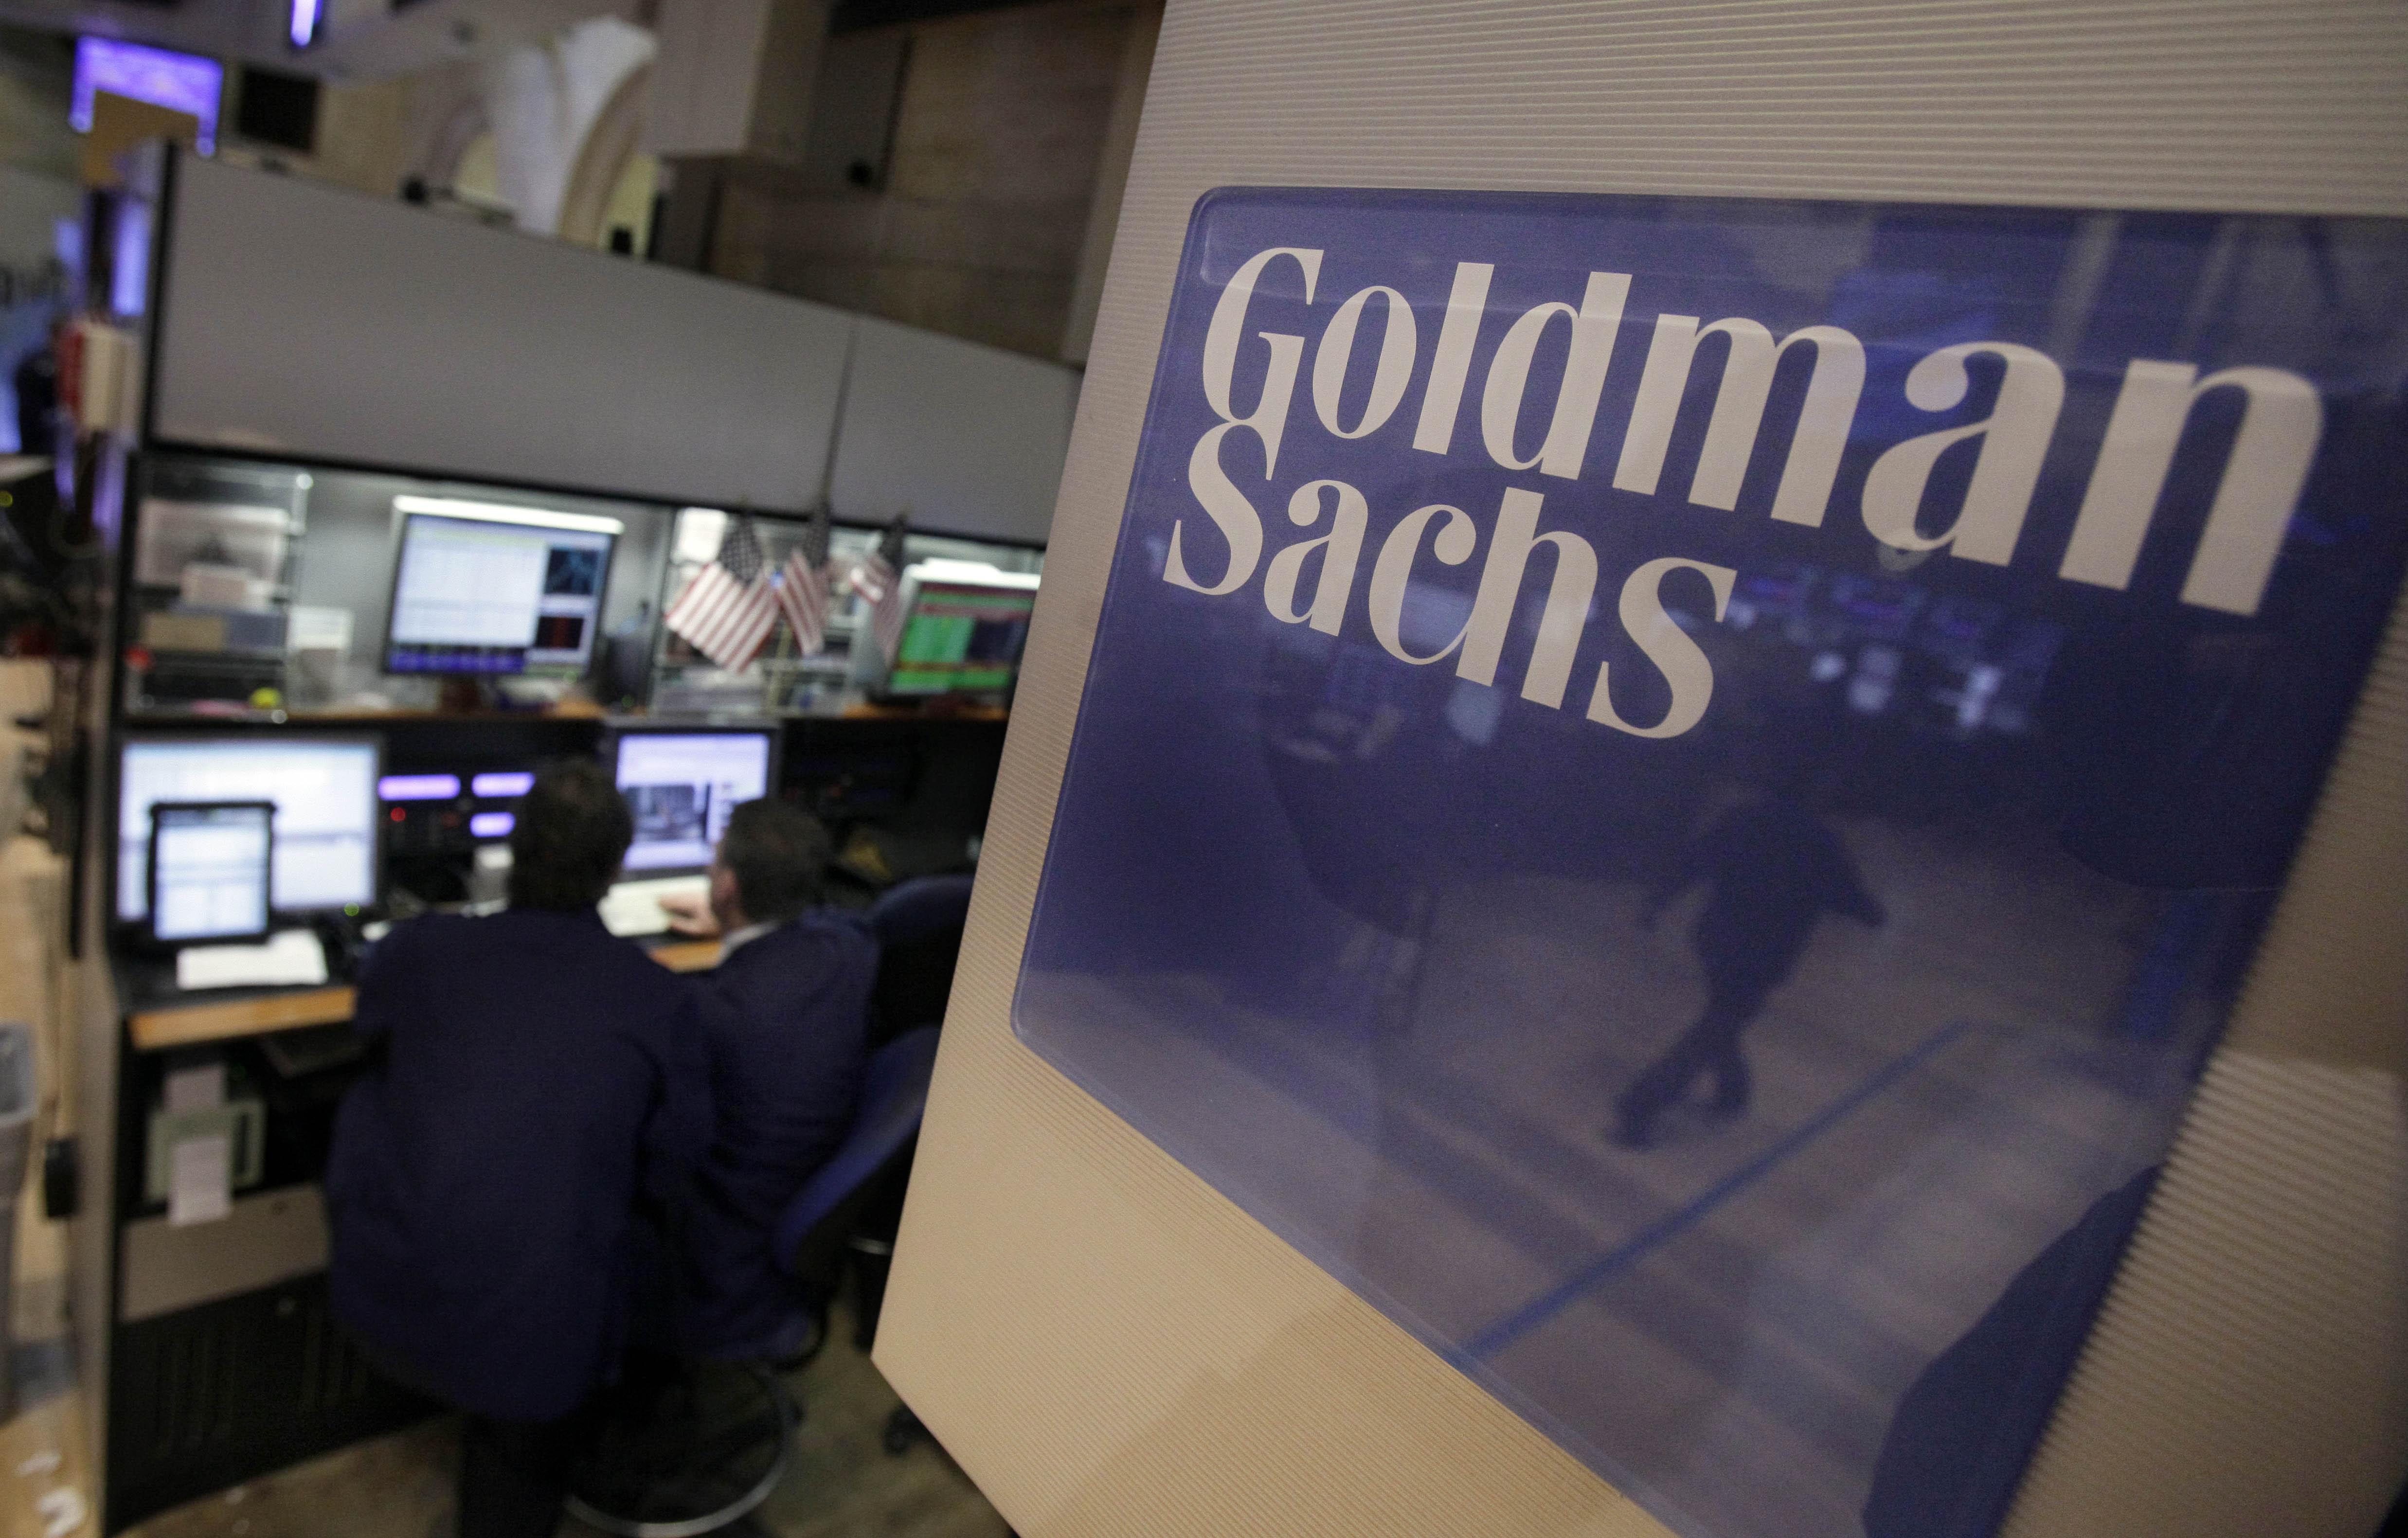 Wall Street, Goldman Sachs, New York, USA